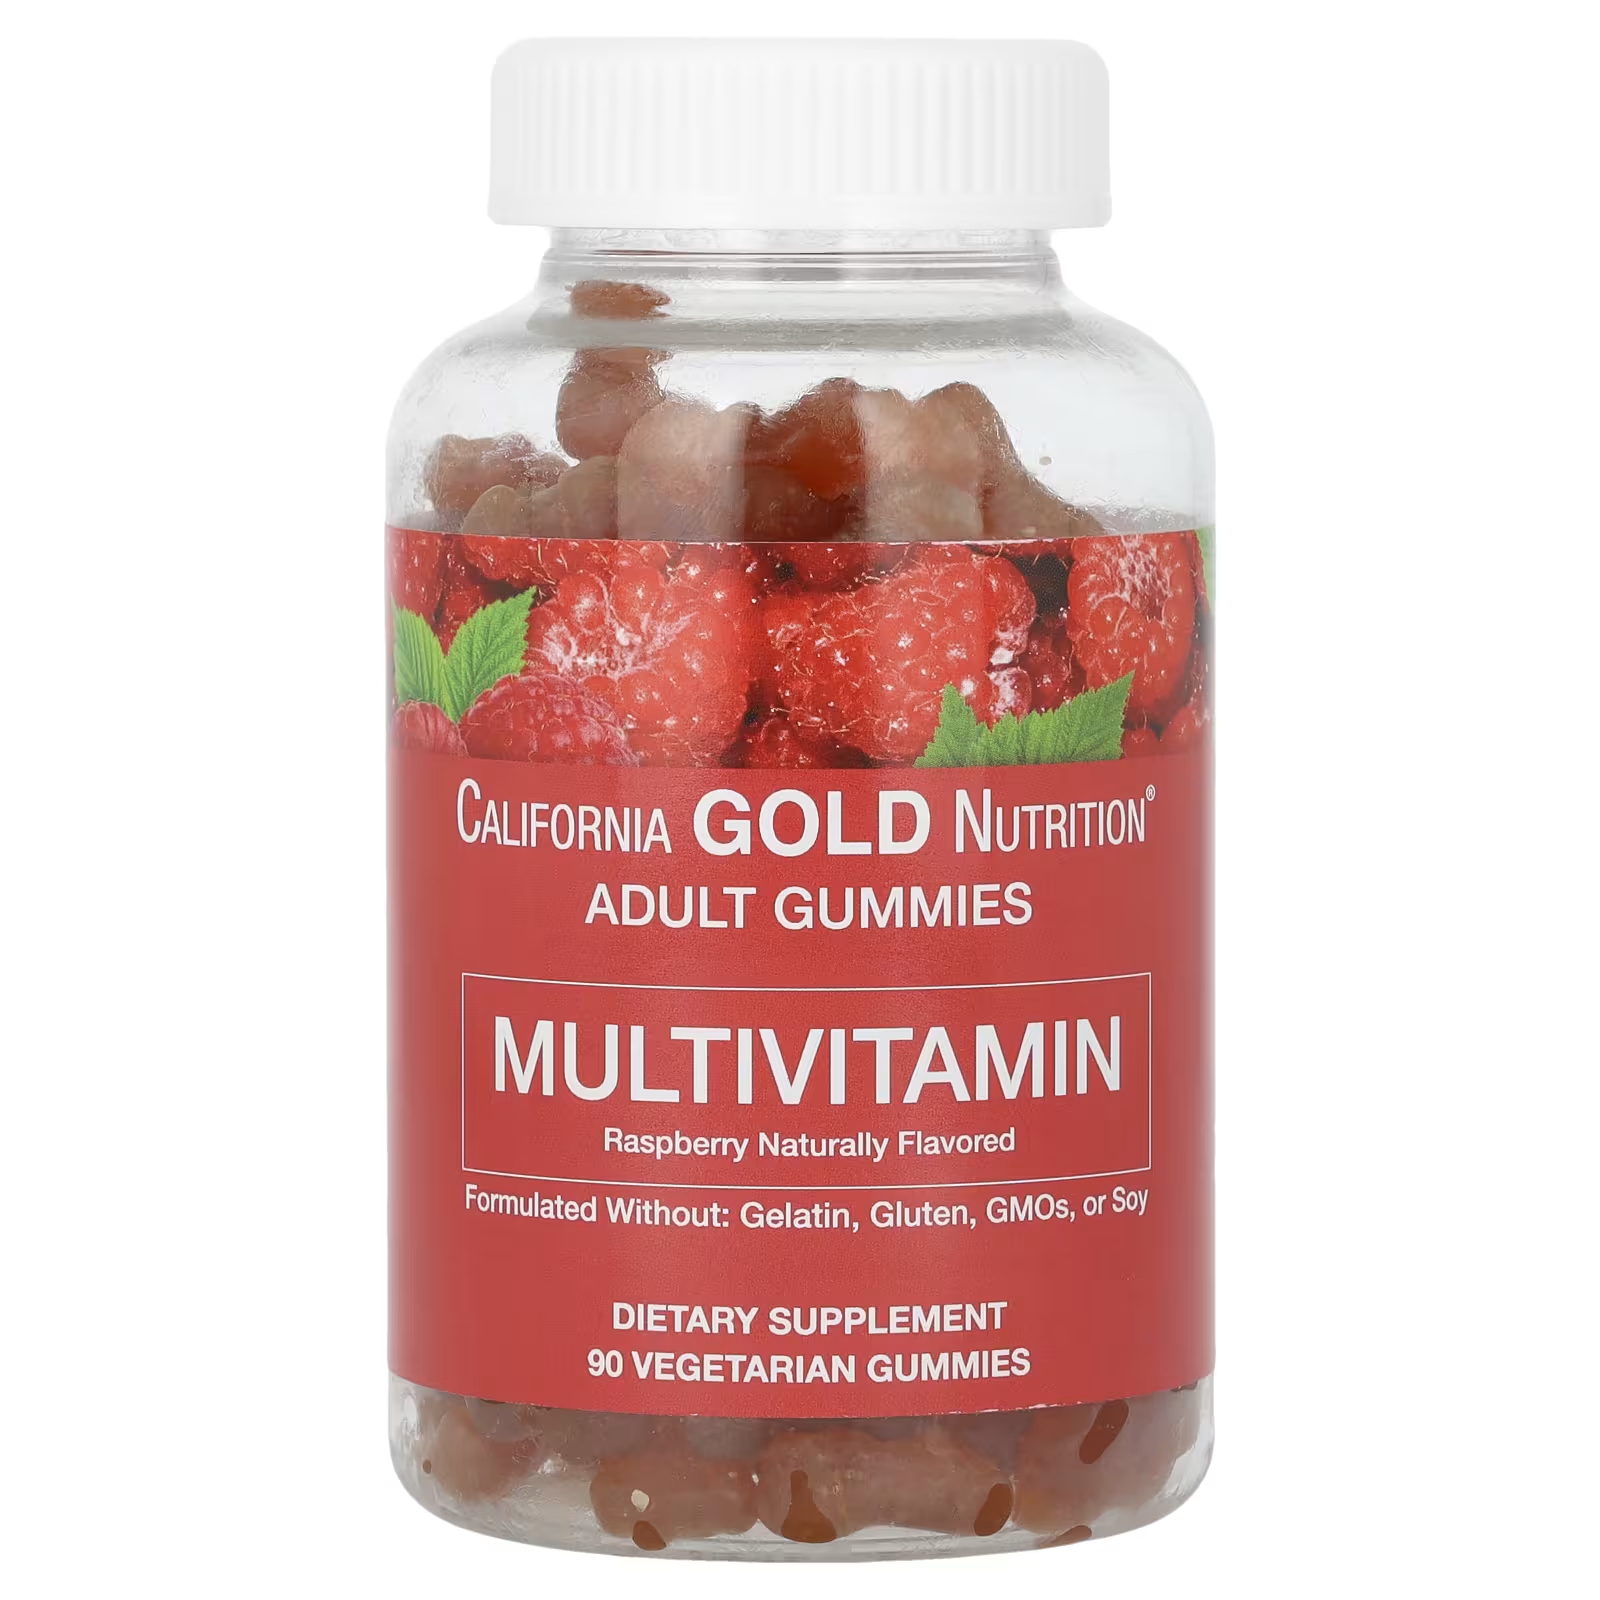 астаксантин california gold nutrition 12 мг в таблетках 30 шт Мультивитаминные жевательные конфеты для взрослых с натуральным вкусом малины, 90 вегетарианских жевательных конфет California Gold Nutrition